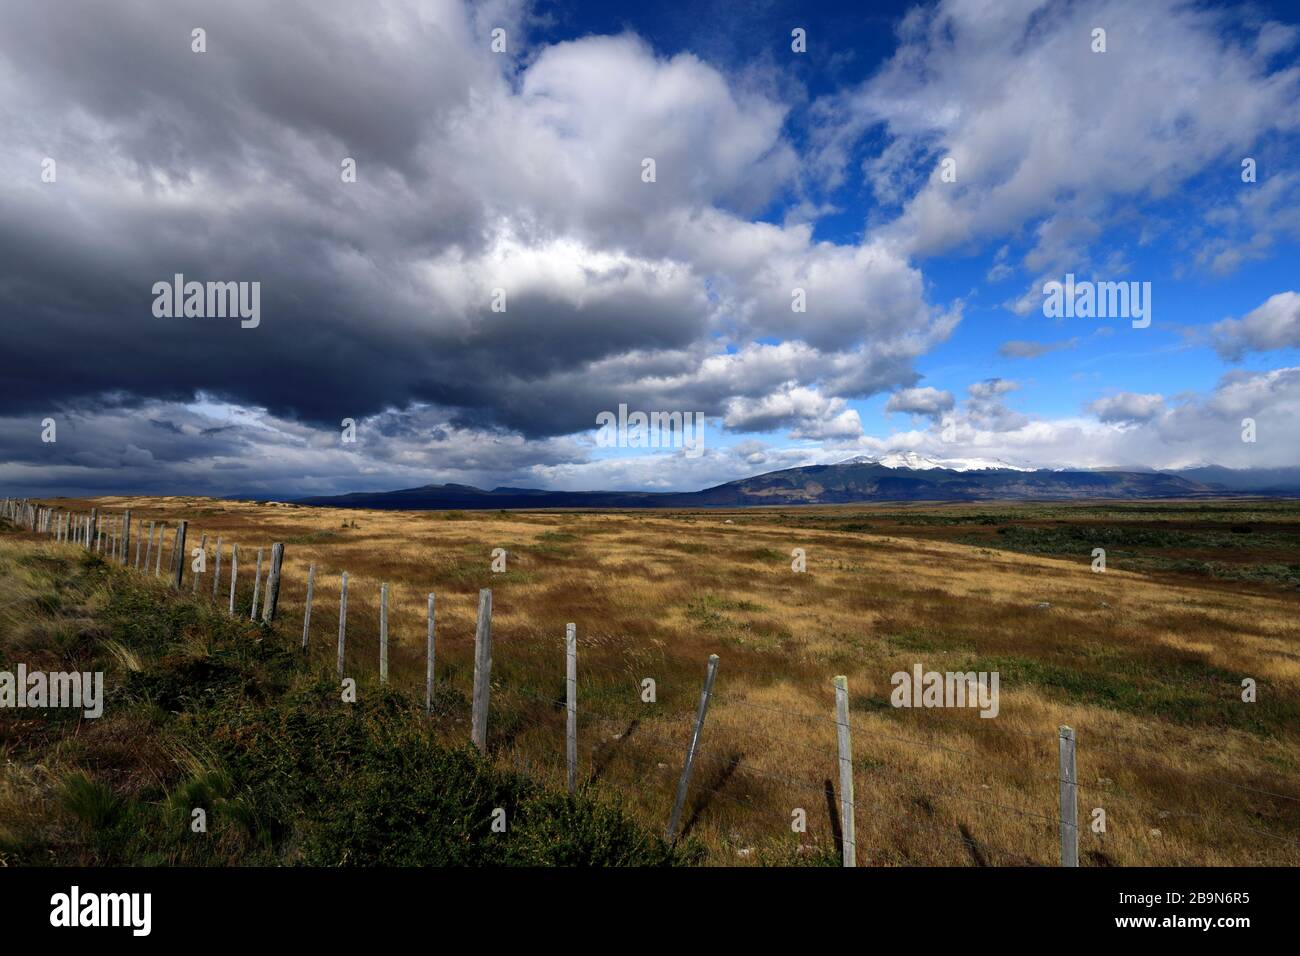 Dramatische Wolken über der Wüste Patagonia Steppe, in der Nähe der Stadt  Puerto Natales, Patagonien, Chile, Südamerika Stockfotografie - Alamy